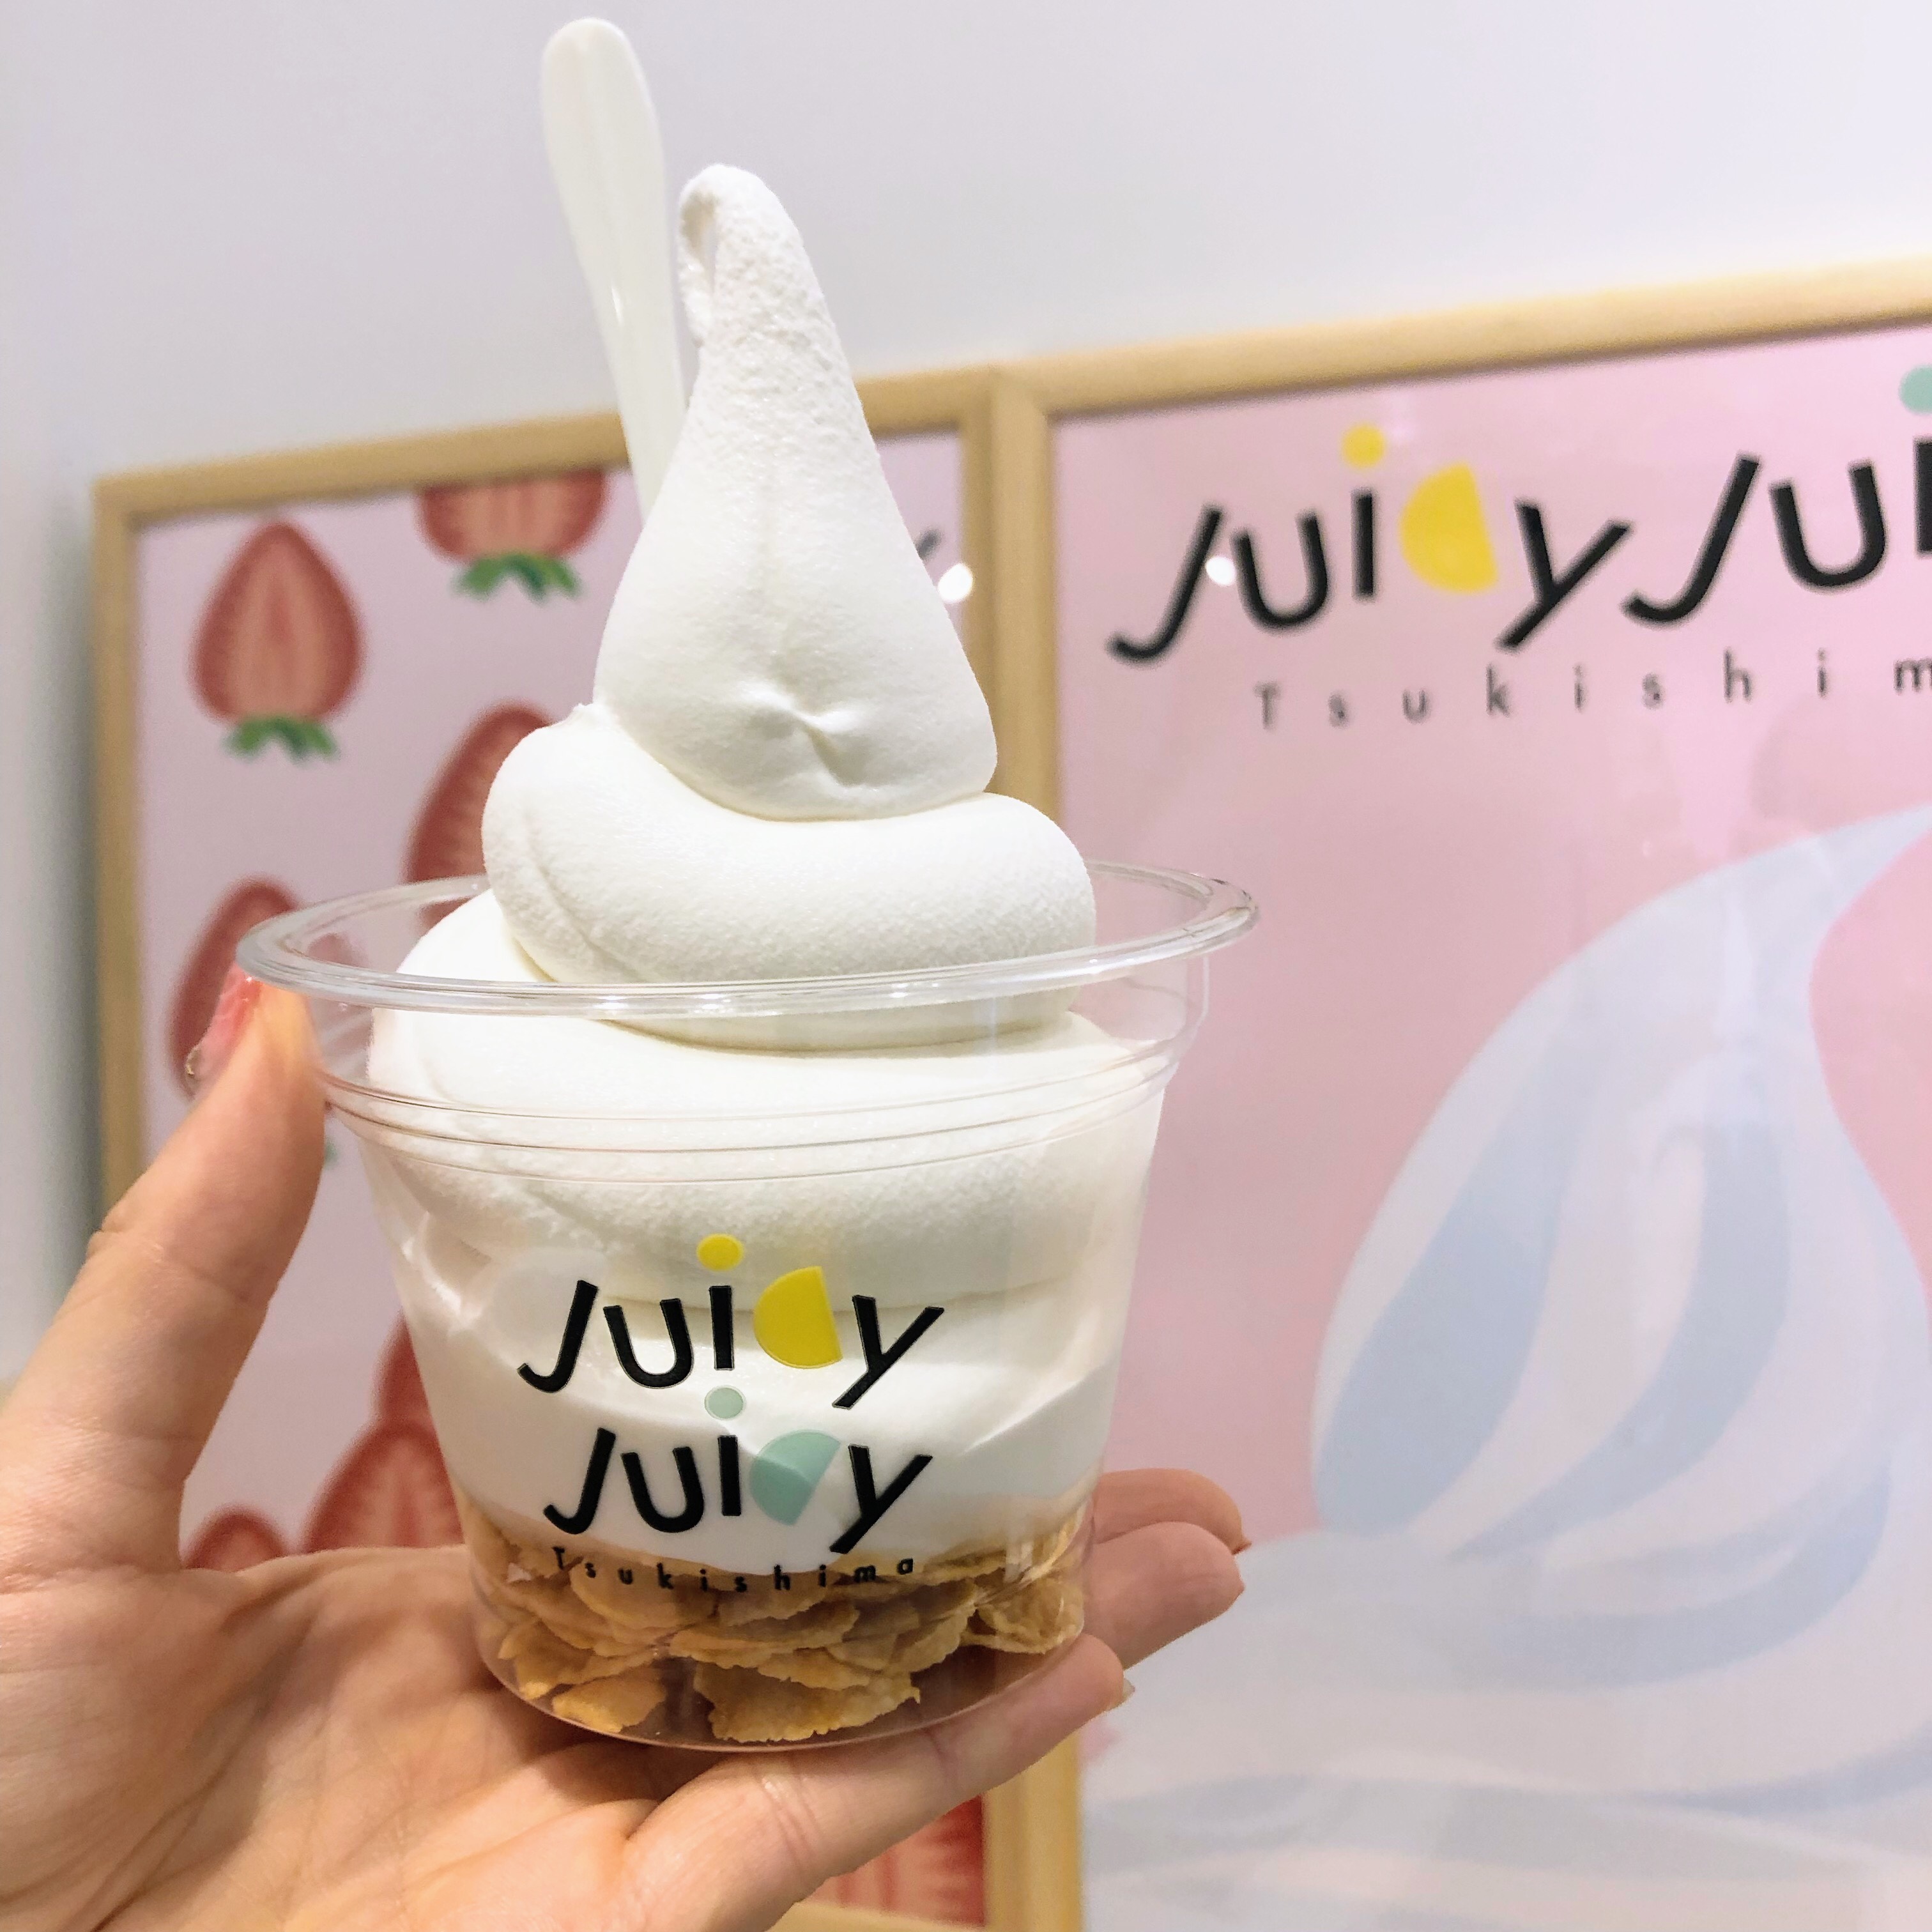 ソフカツ ソフトクリームマニアの全国ソフトクリーム食べ歩きブログ 月島 Juicy Juicy Tsukishima ヨーグルトミルクソフト